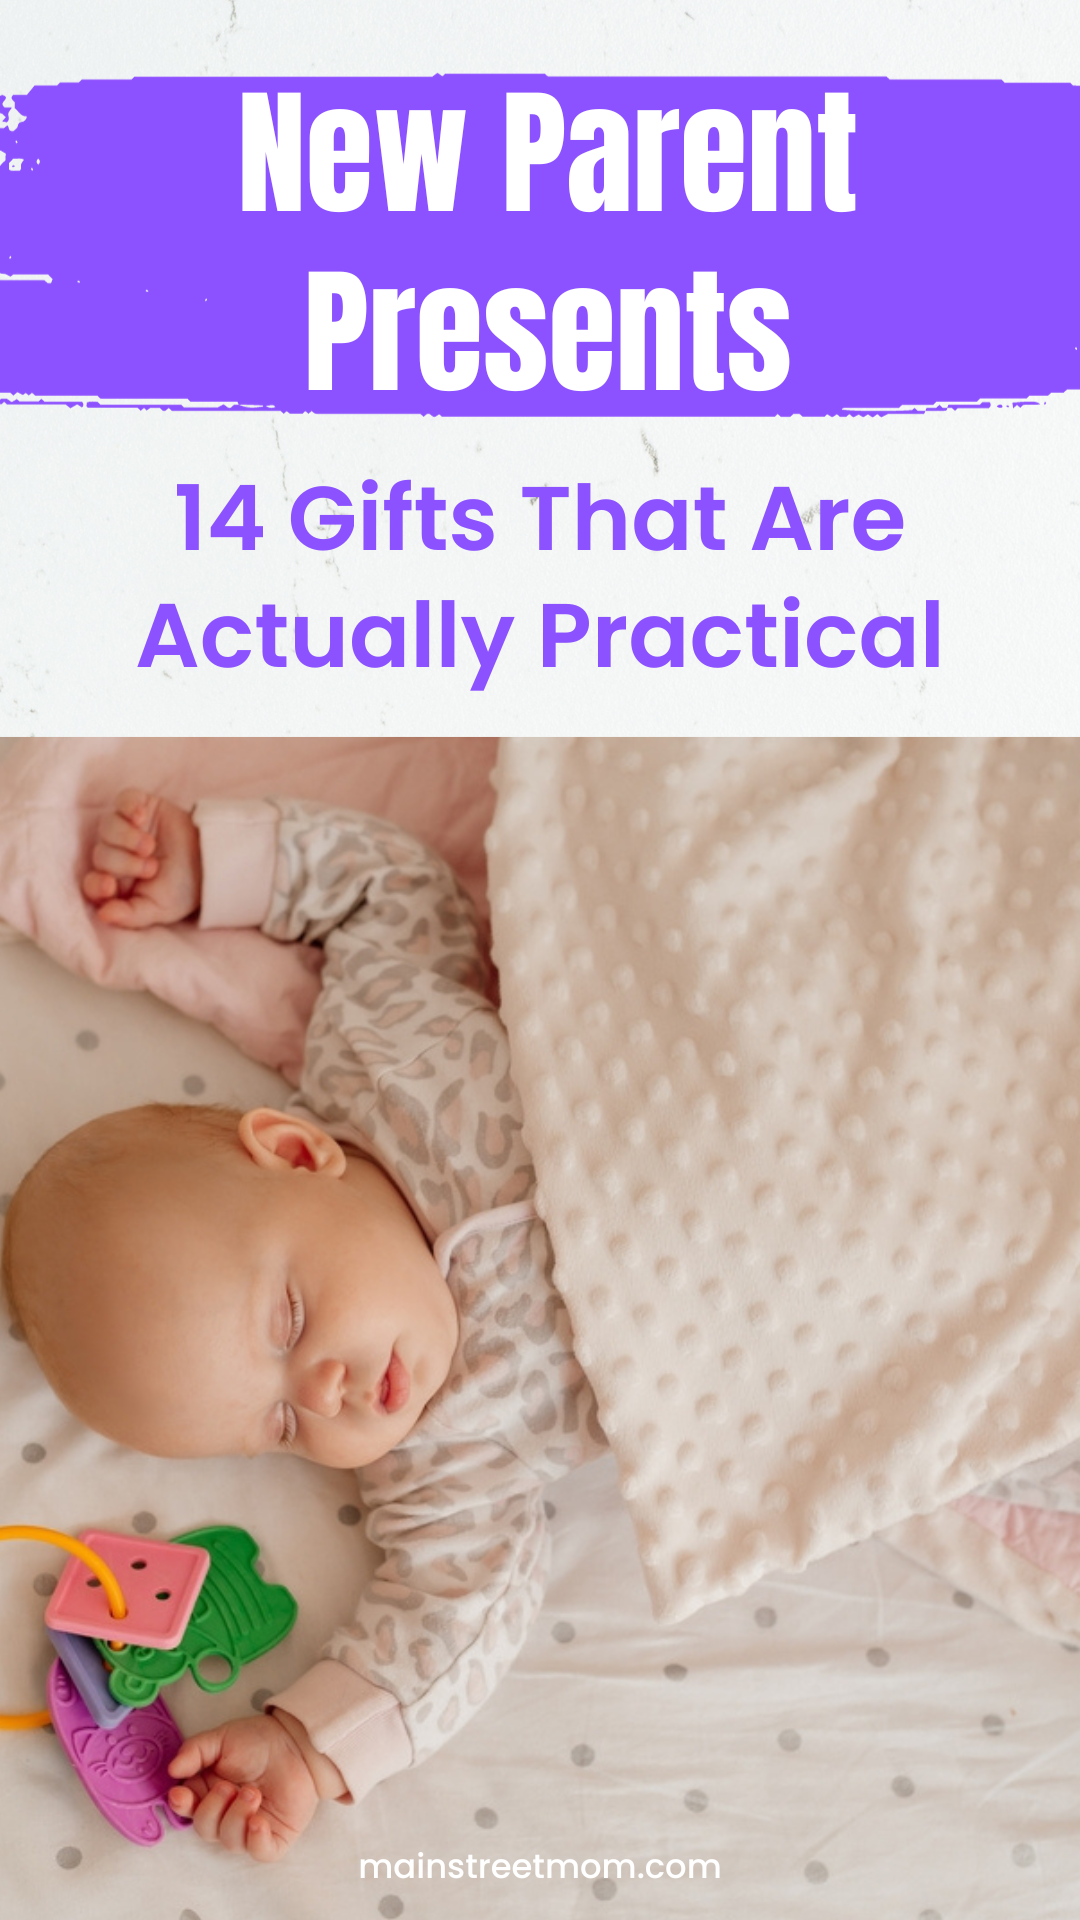 Regalos para padres primerizos: 14 regalos realmente prácticos